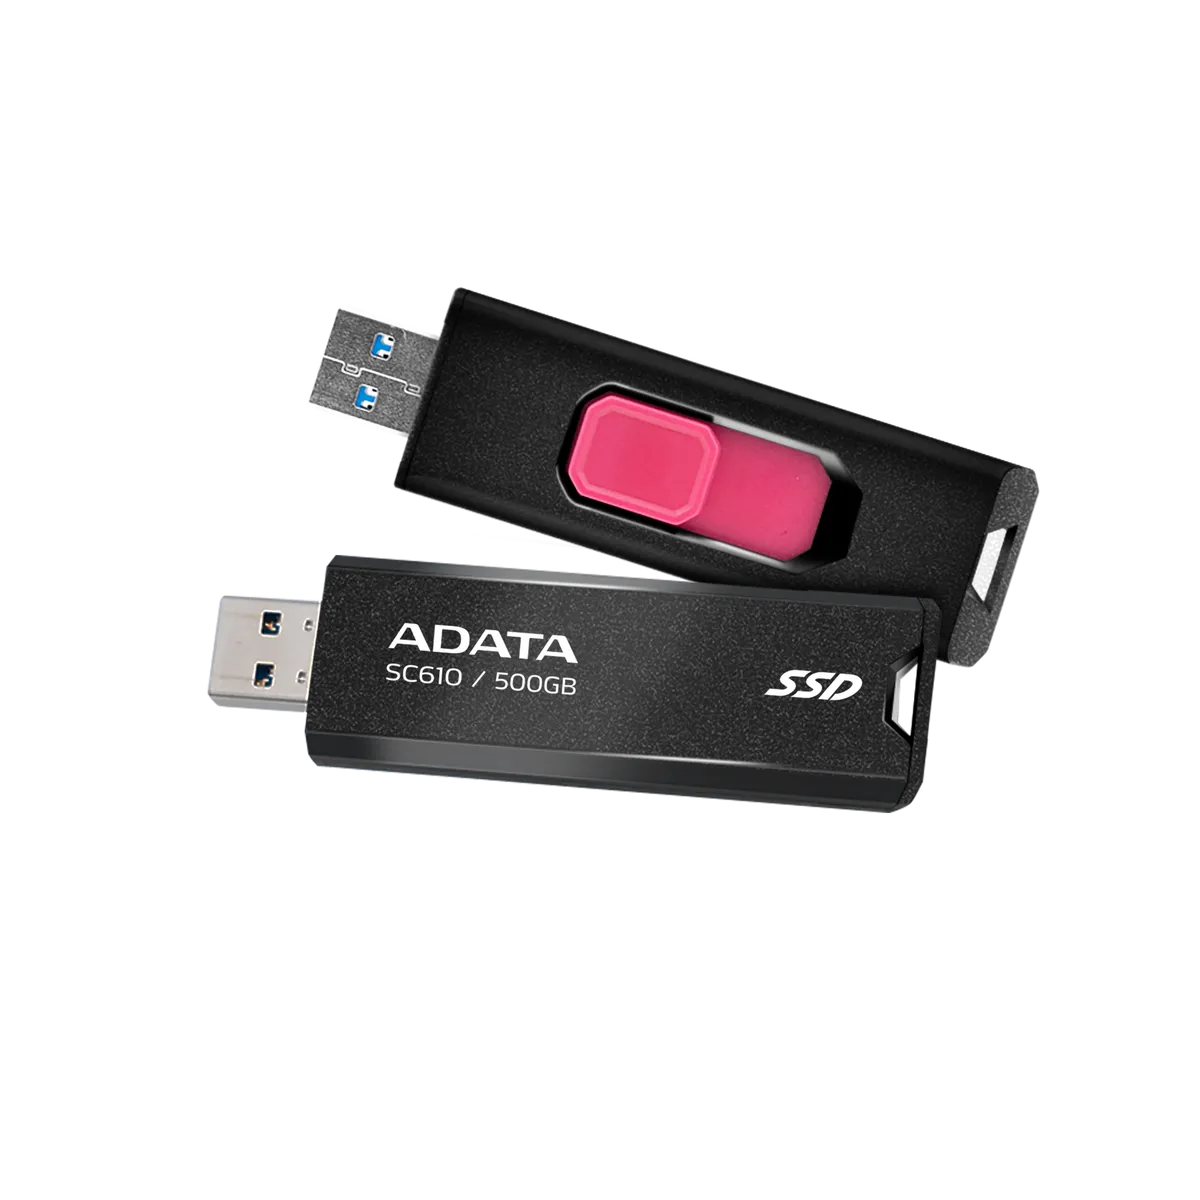 ADATA SC610 External SSD Stick